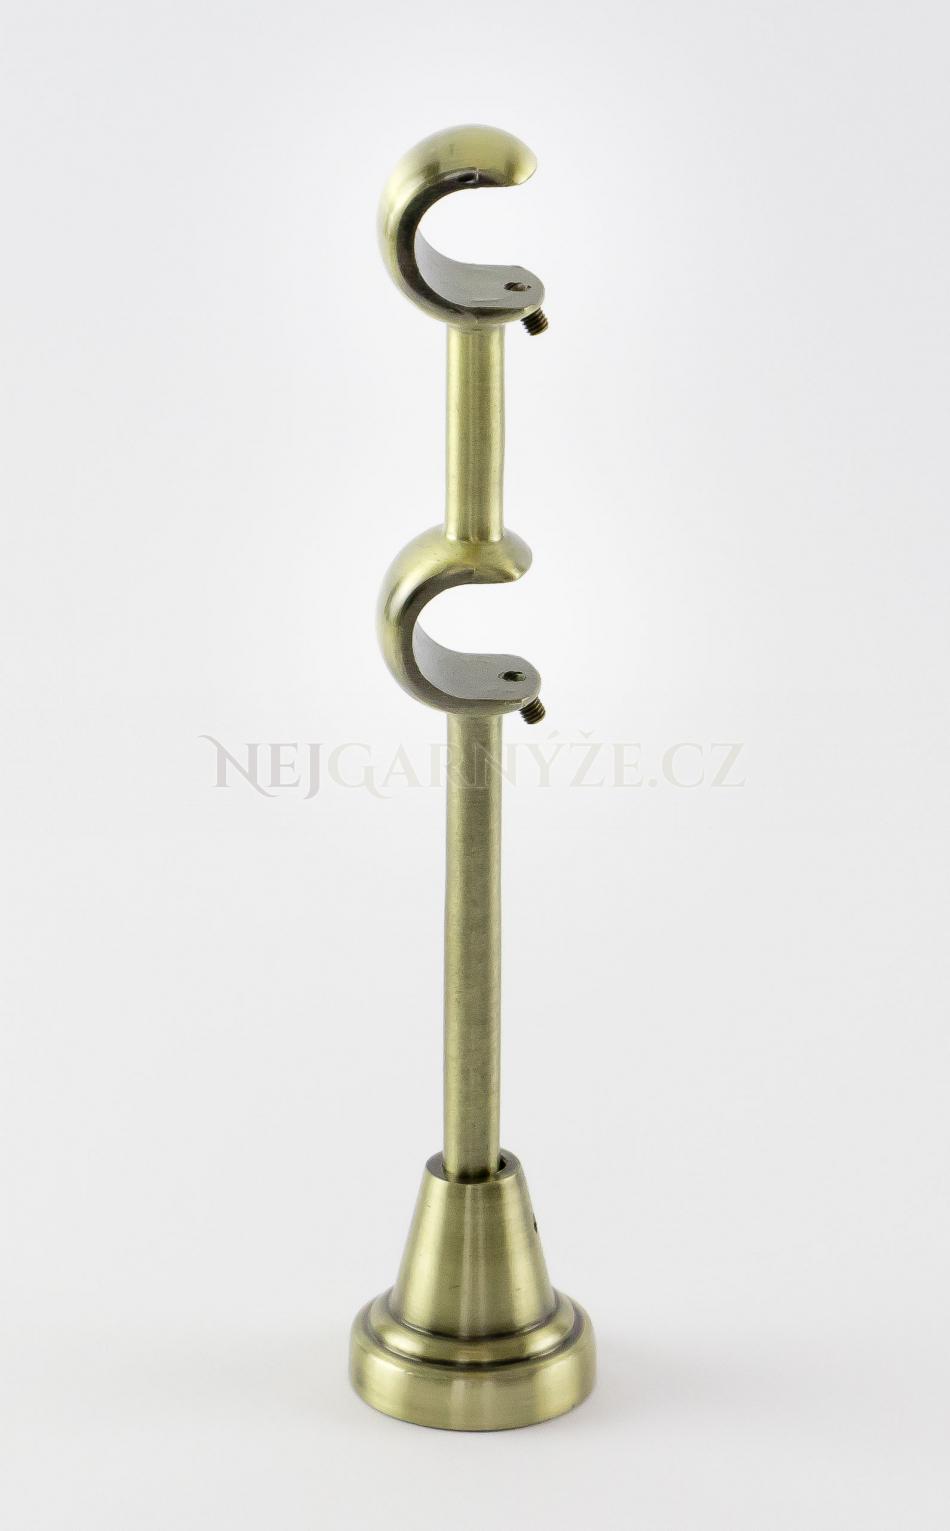 Kovový držák galvanizovaný dvoutyčový Ø 19/19 mm Antické zlato